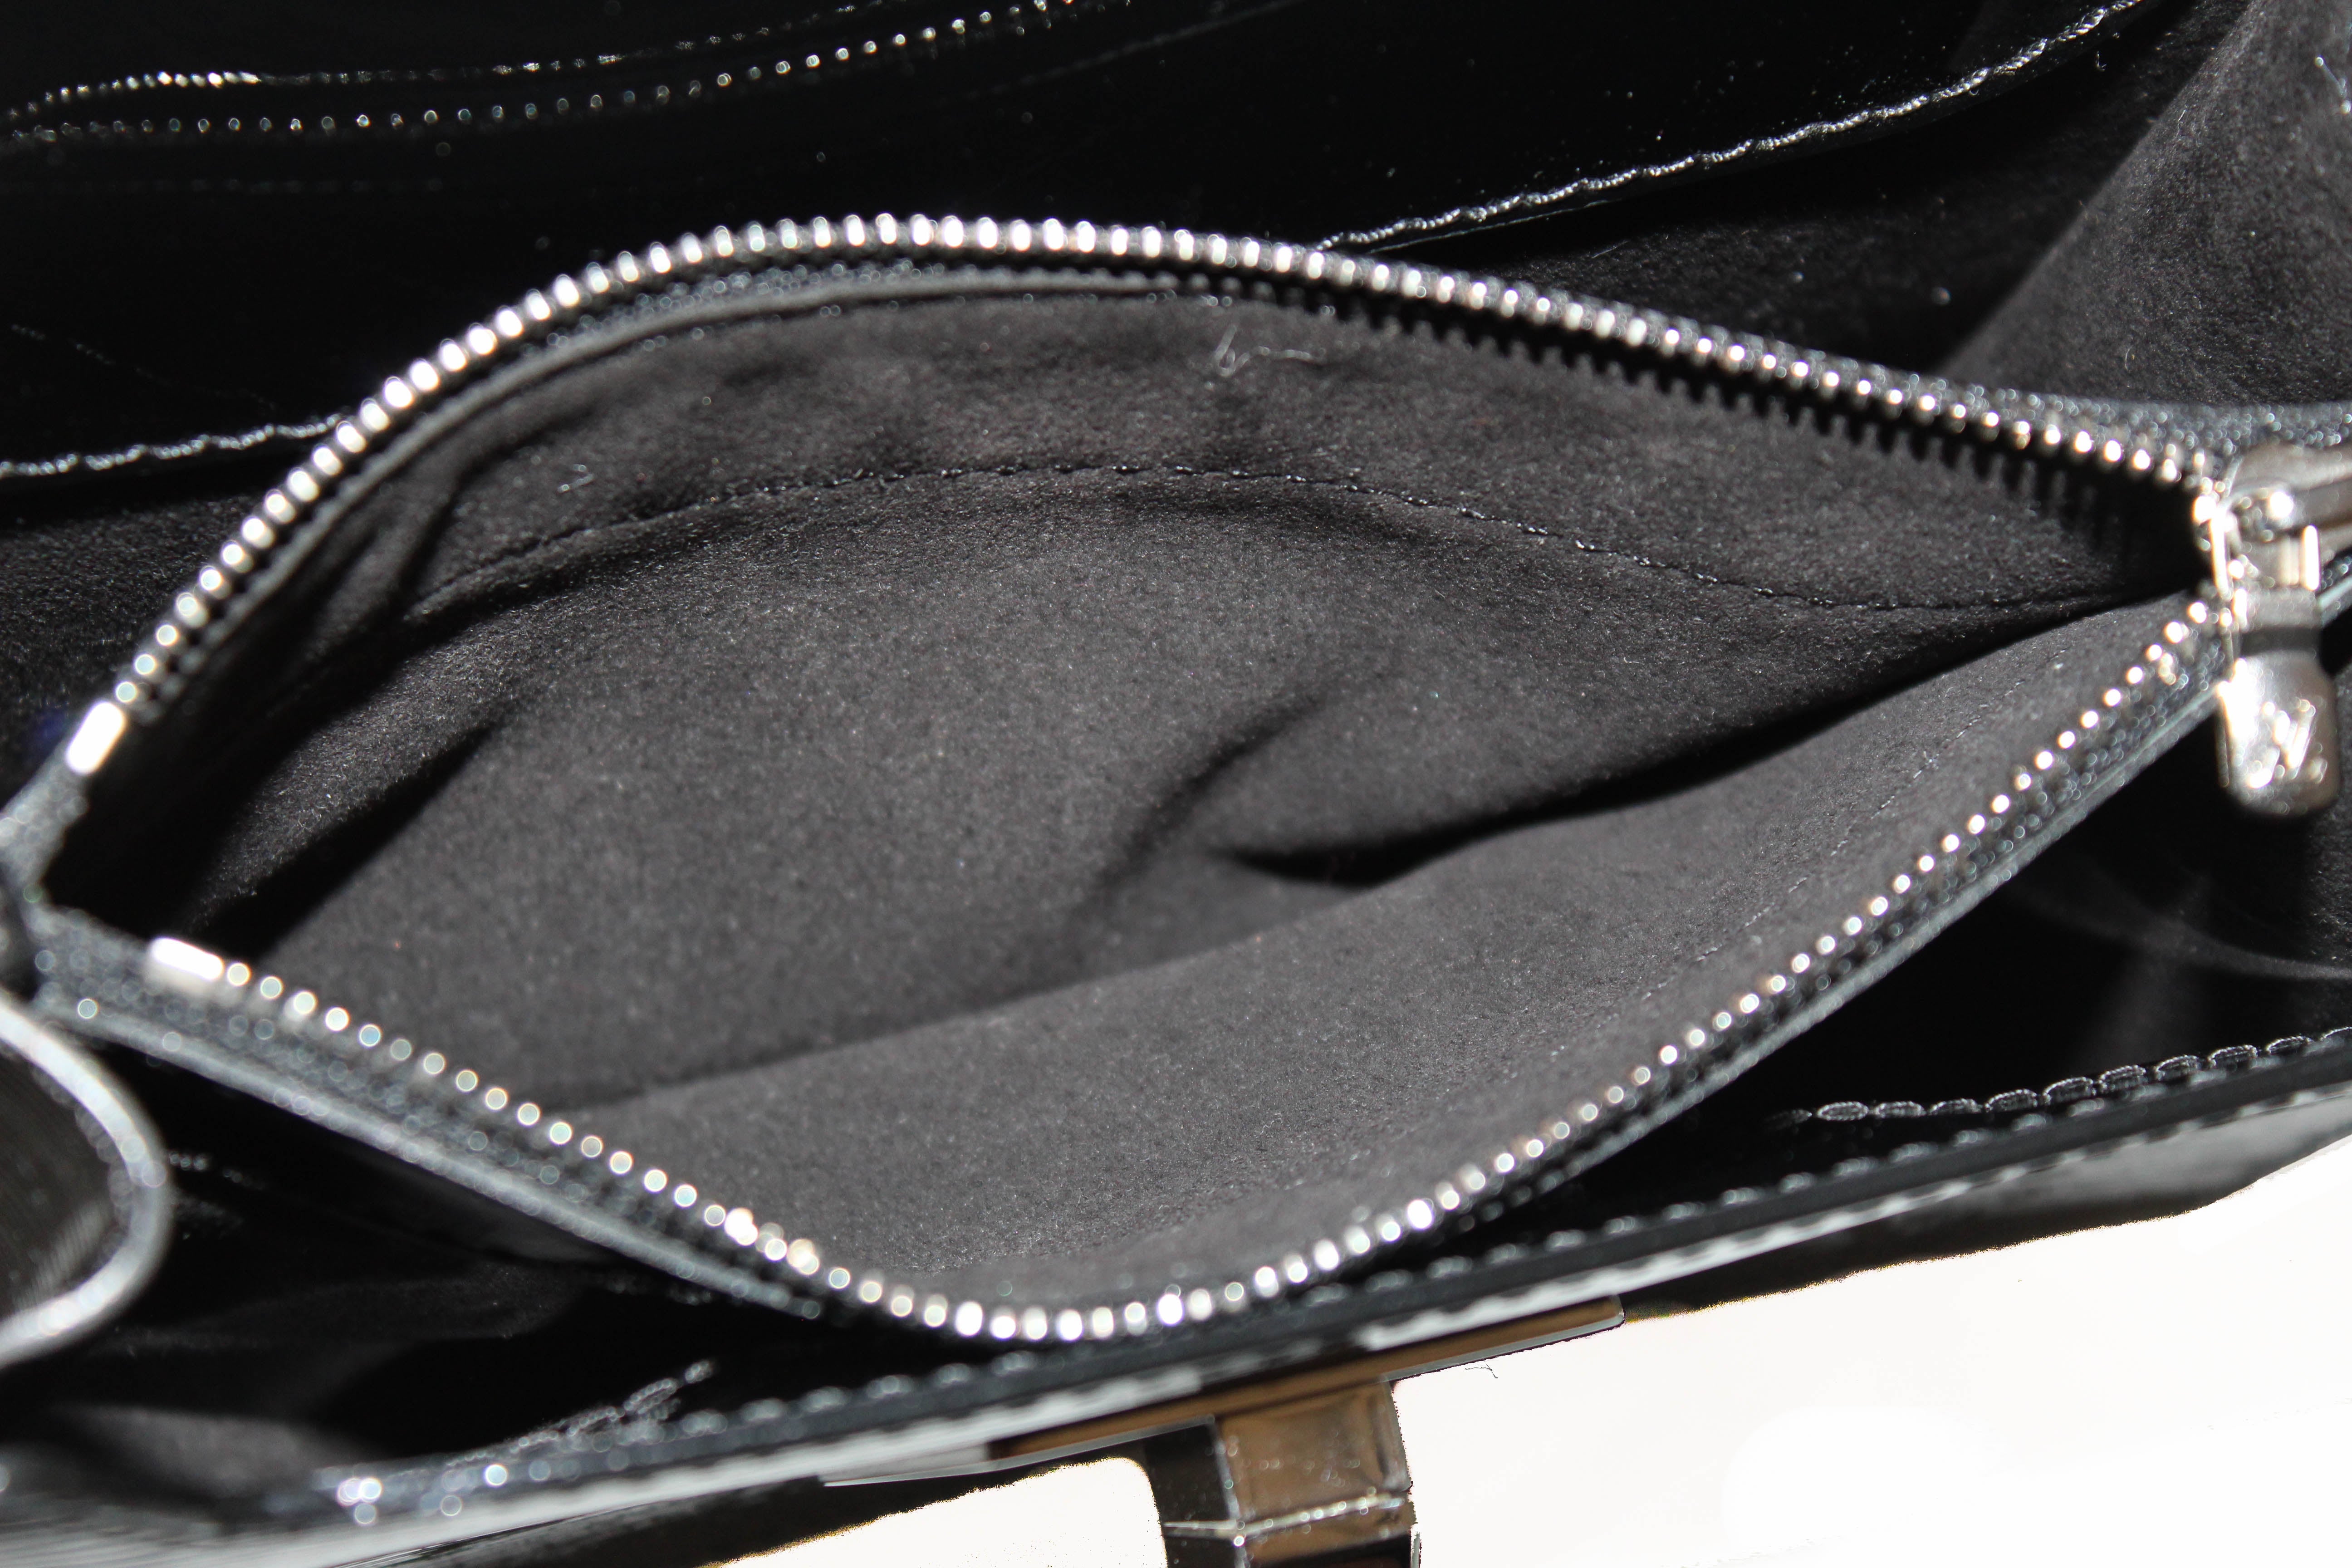 Louis Vuitton Sevigne Clutch Electric Epi Leather Black 454852